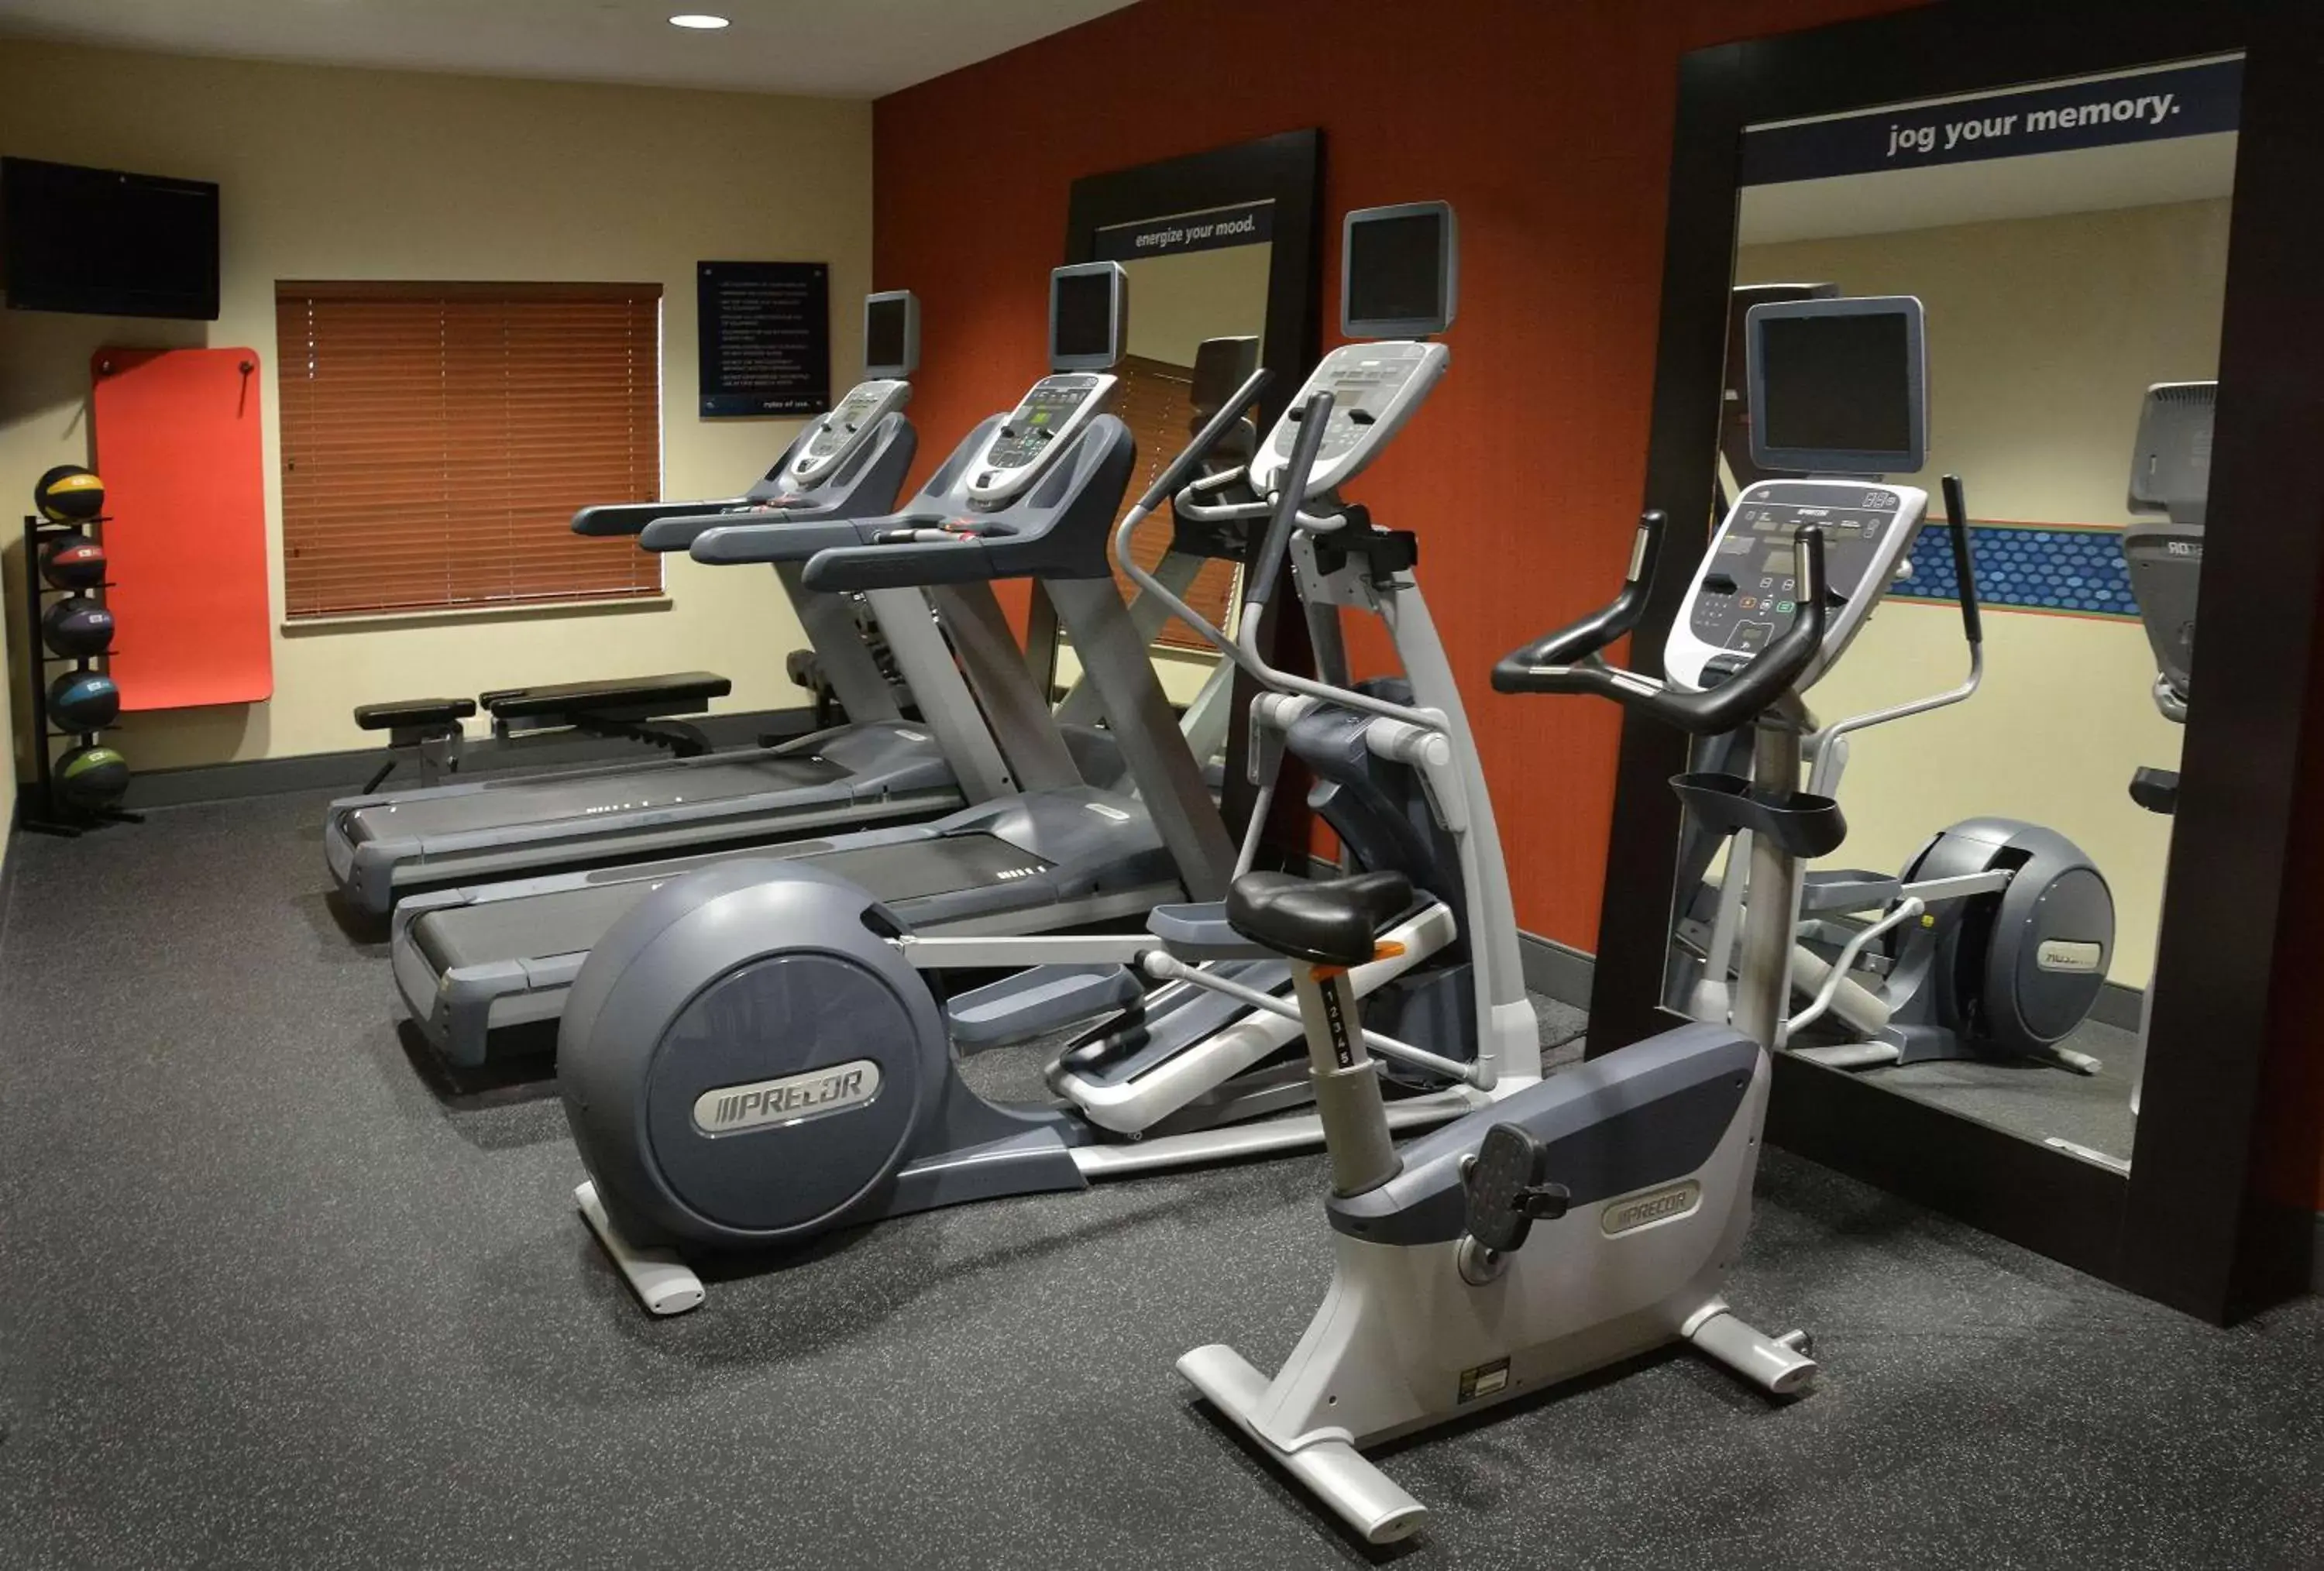 Fitness centre/facilities, Fitness Center/Facilities in Hampton Inn Medford